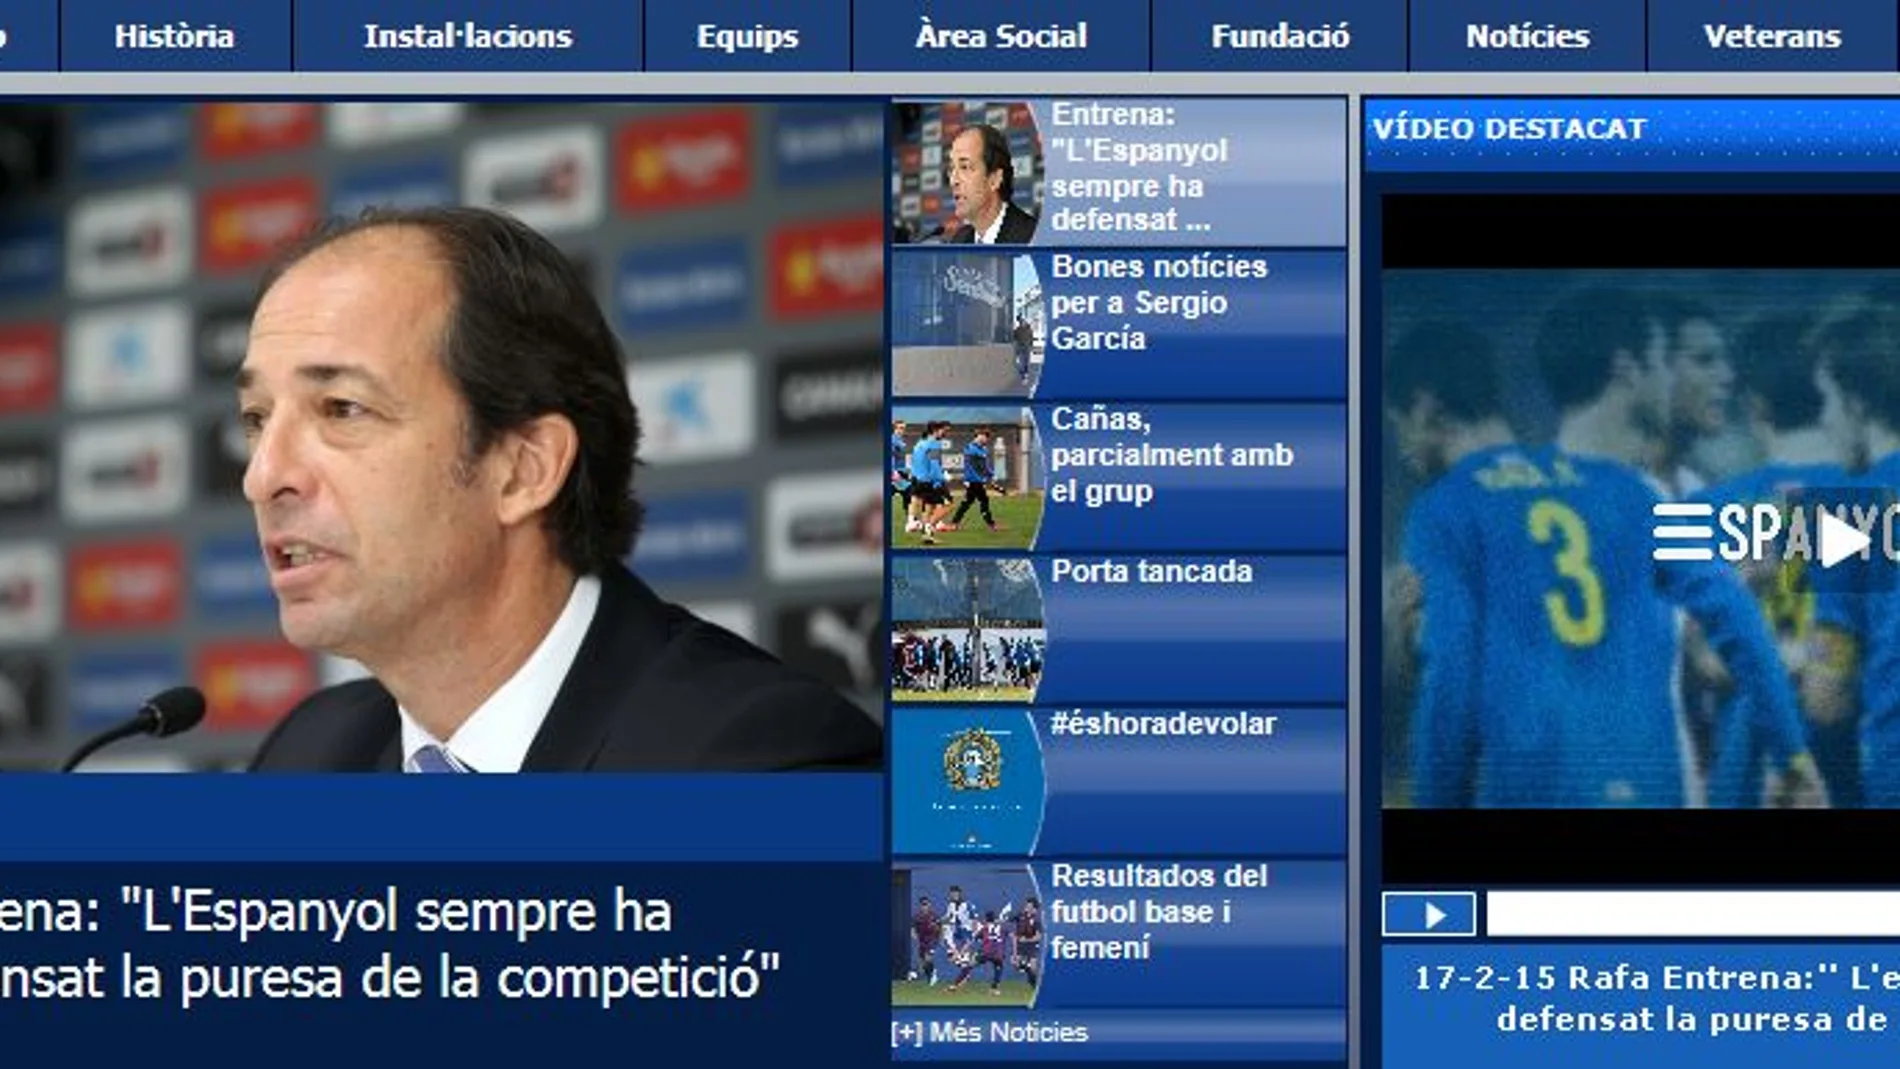 El portavoz del Espanyol, Rafael Entrena, afirma que el club «siempre ha defendido la pureza de la competición»